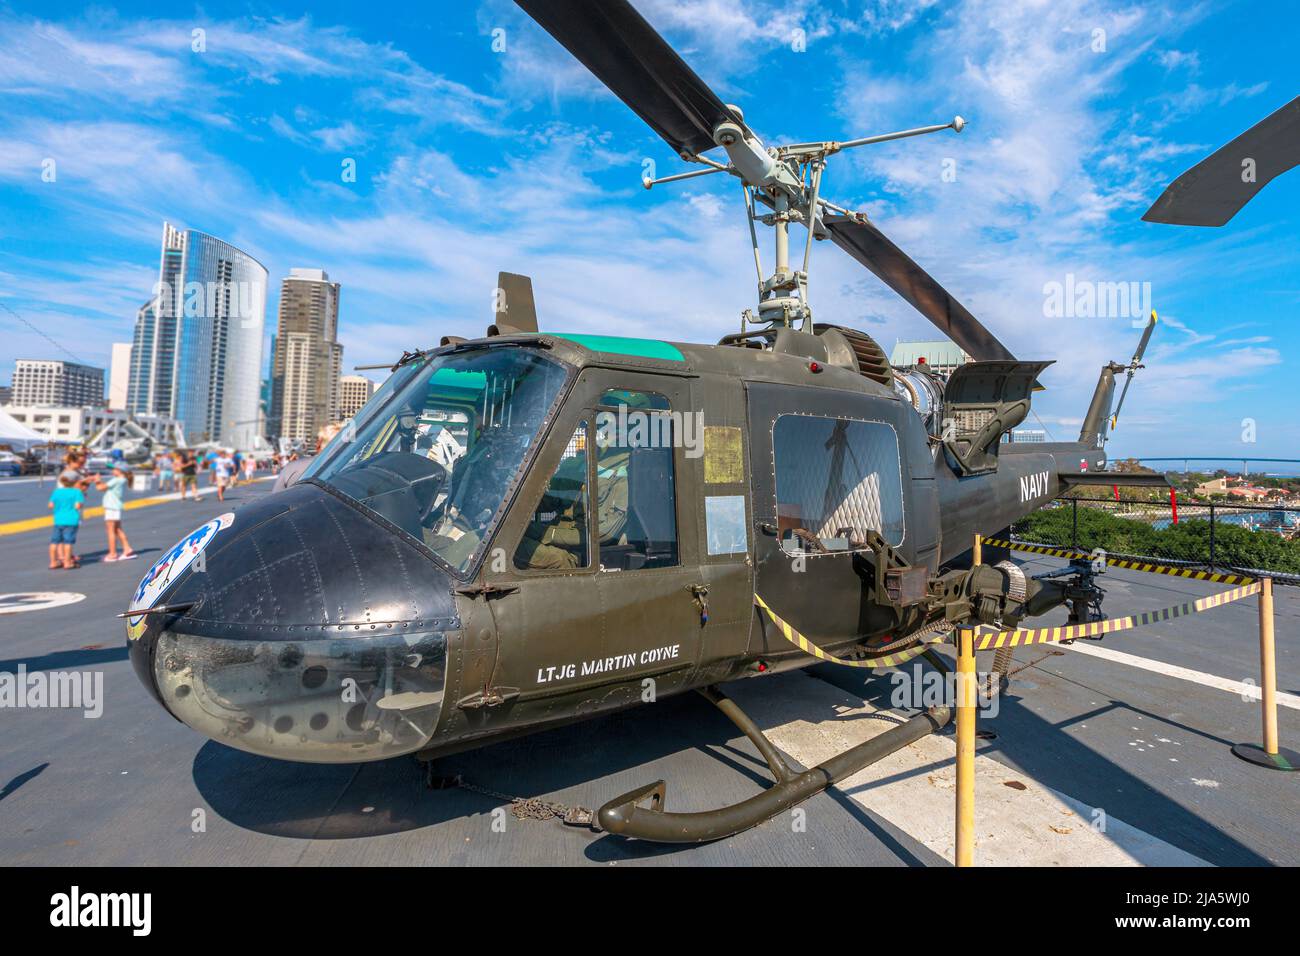 San Diego, California, USA - JULI 2018: UH-1 Huey Gunship Hubschrauber von 1960s. USS Midway Battleship Museum. Amerikanischer Hubschrauber diente in Stockfoto